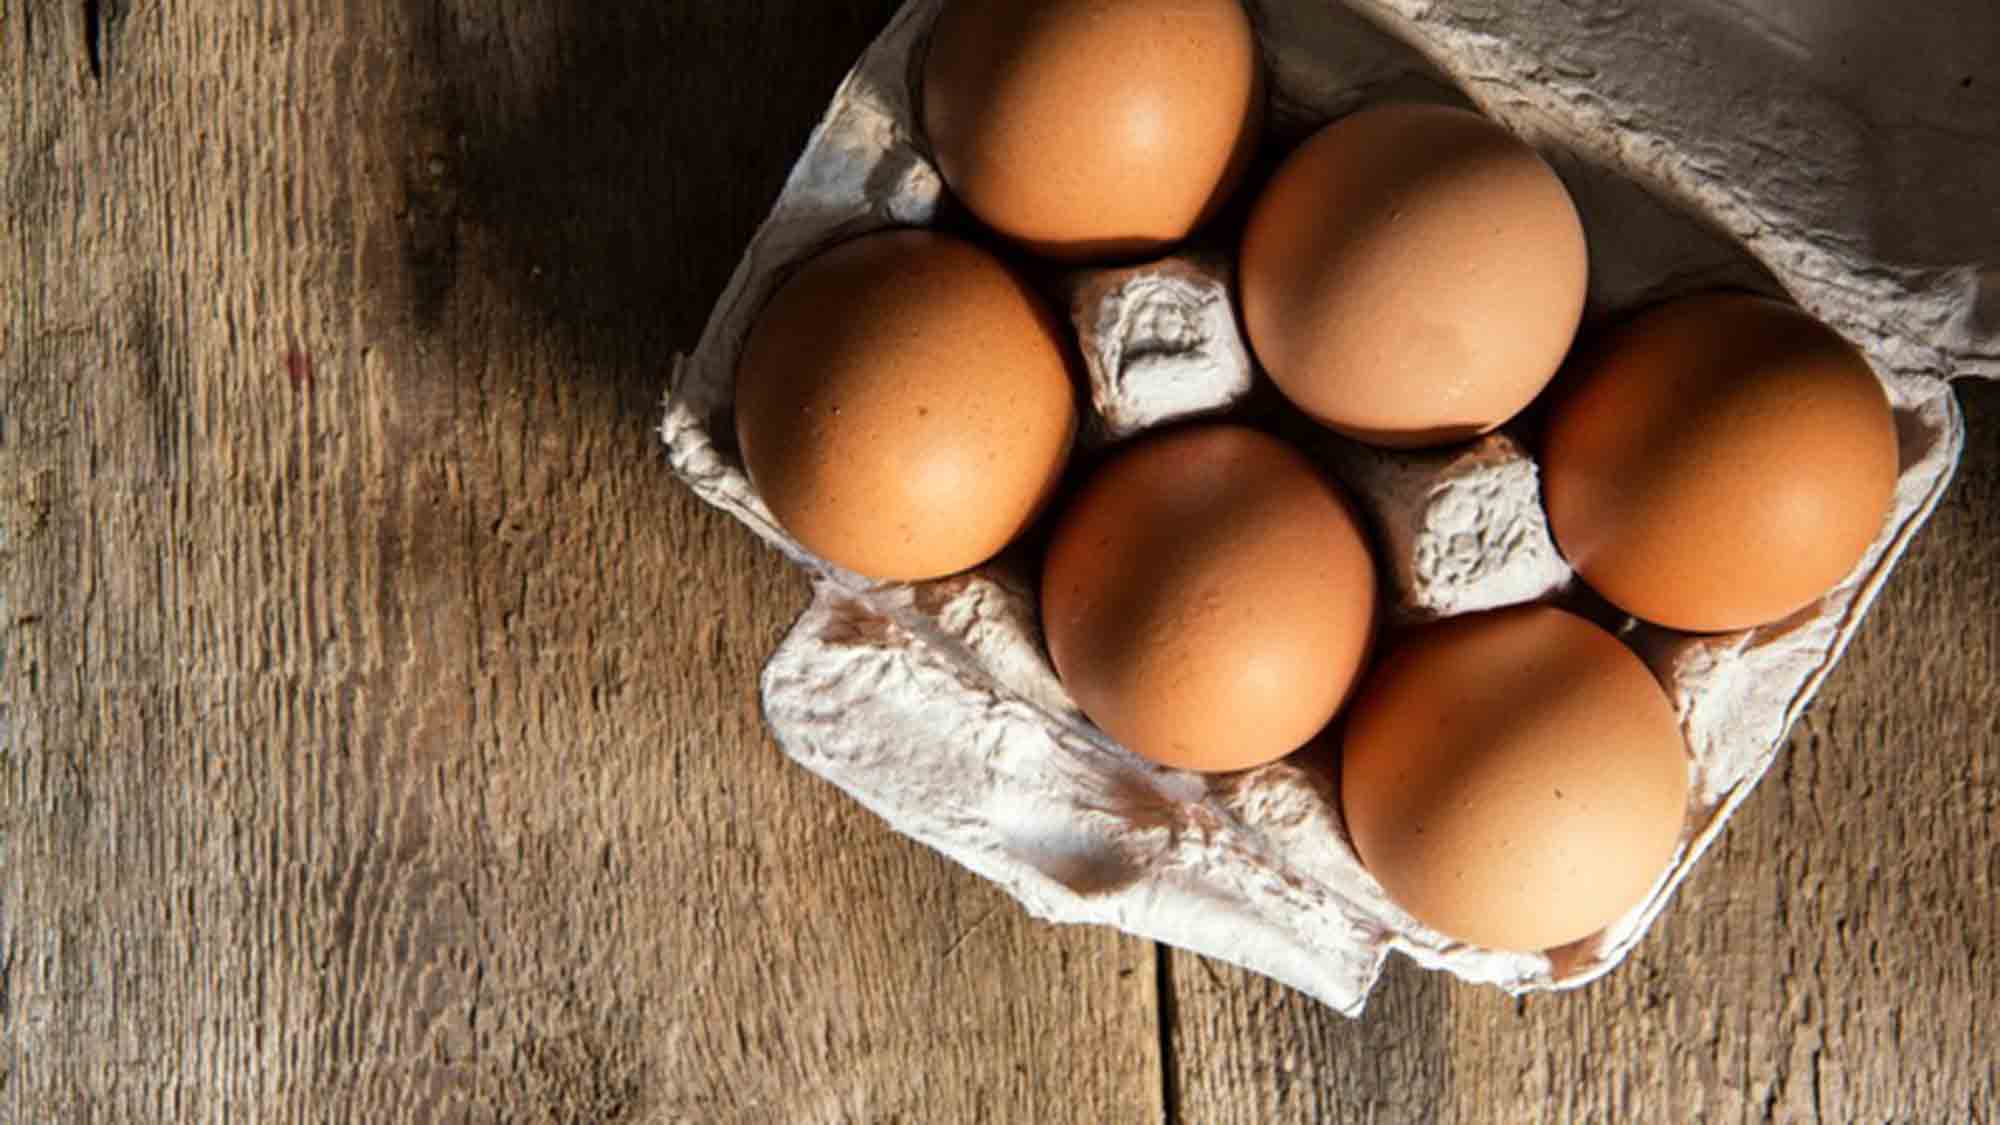 Verbraucherzentrale Nordrhein Westfalen: Wussten Sie schon, dass in Lebensmitteln oft noch Eier aus Käfighaltung stecken?